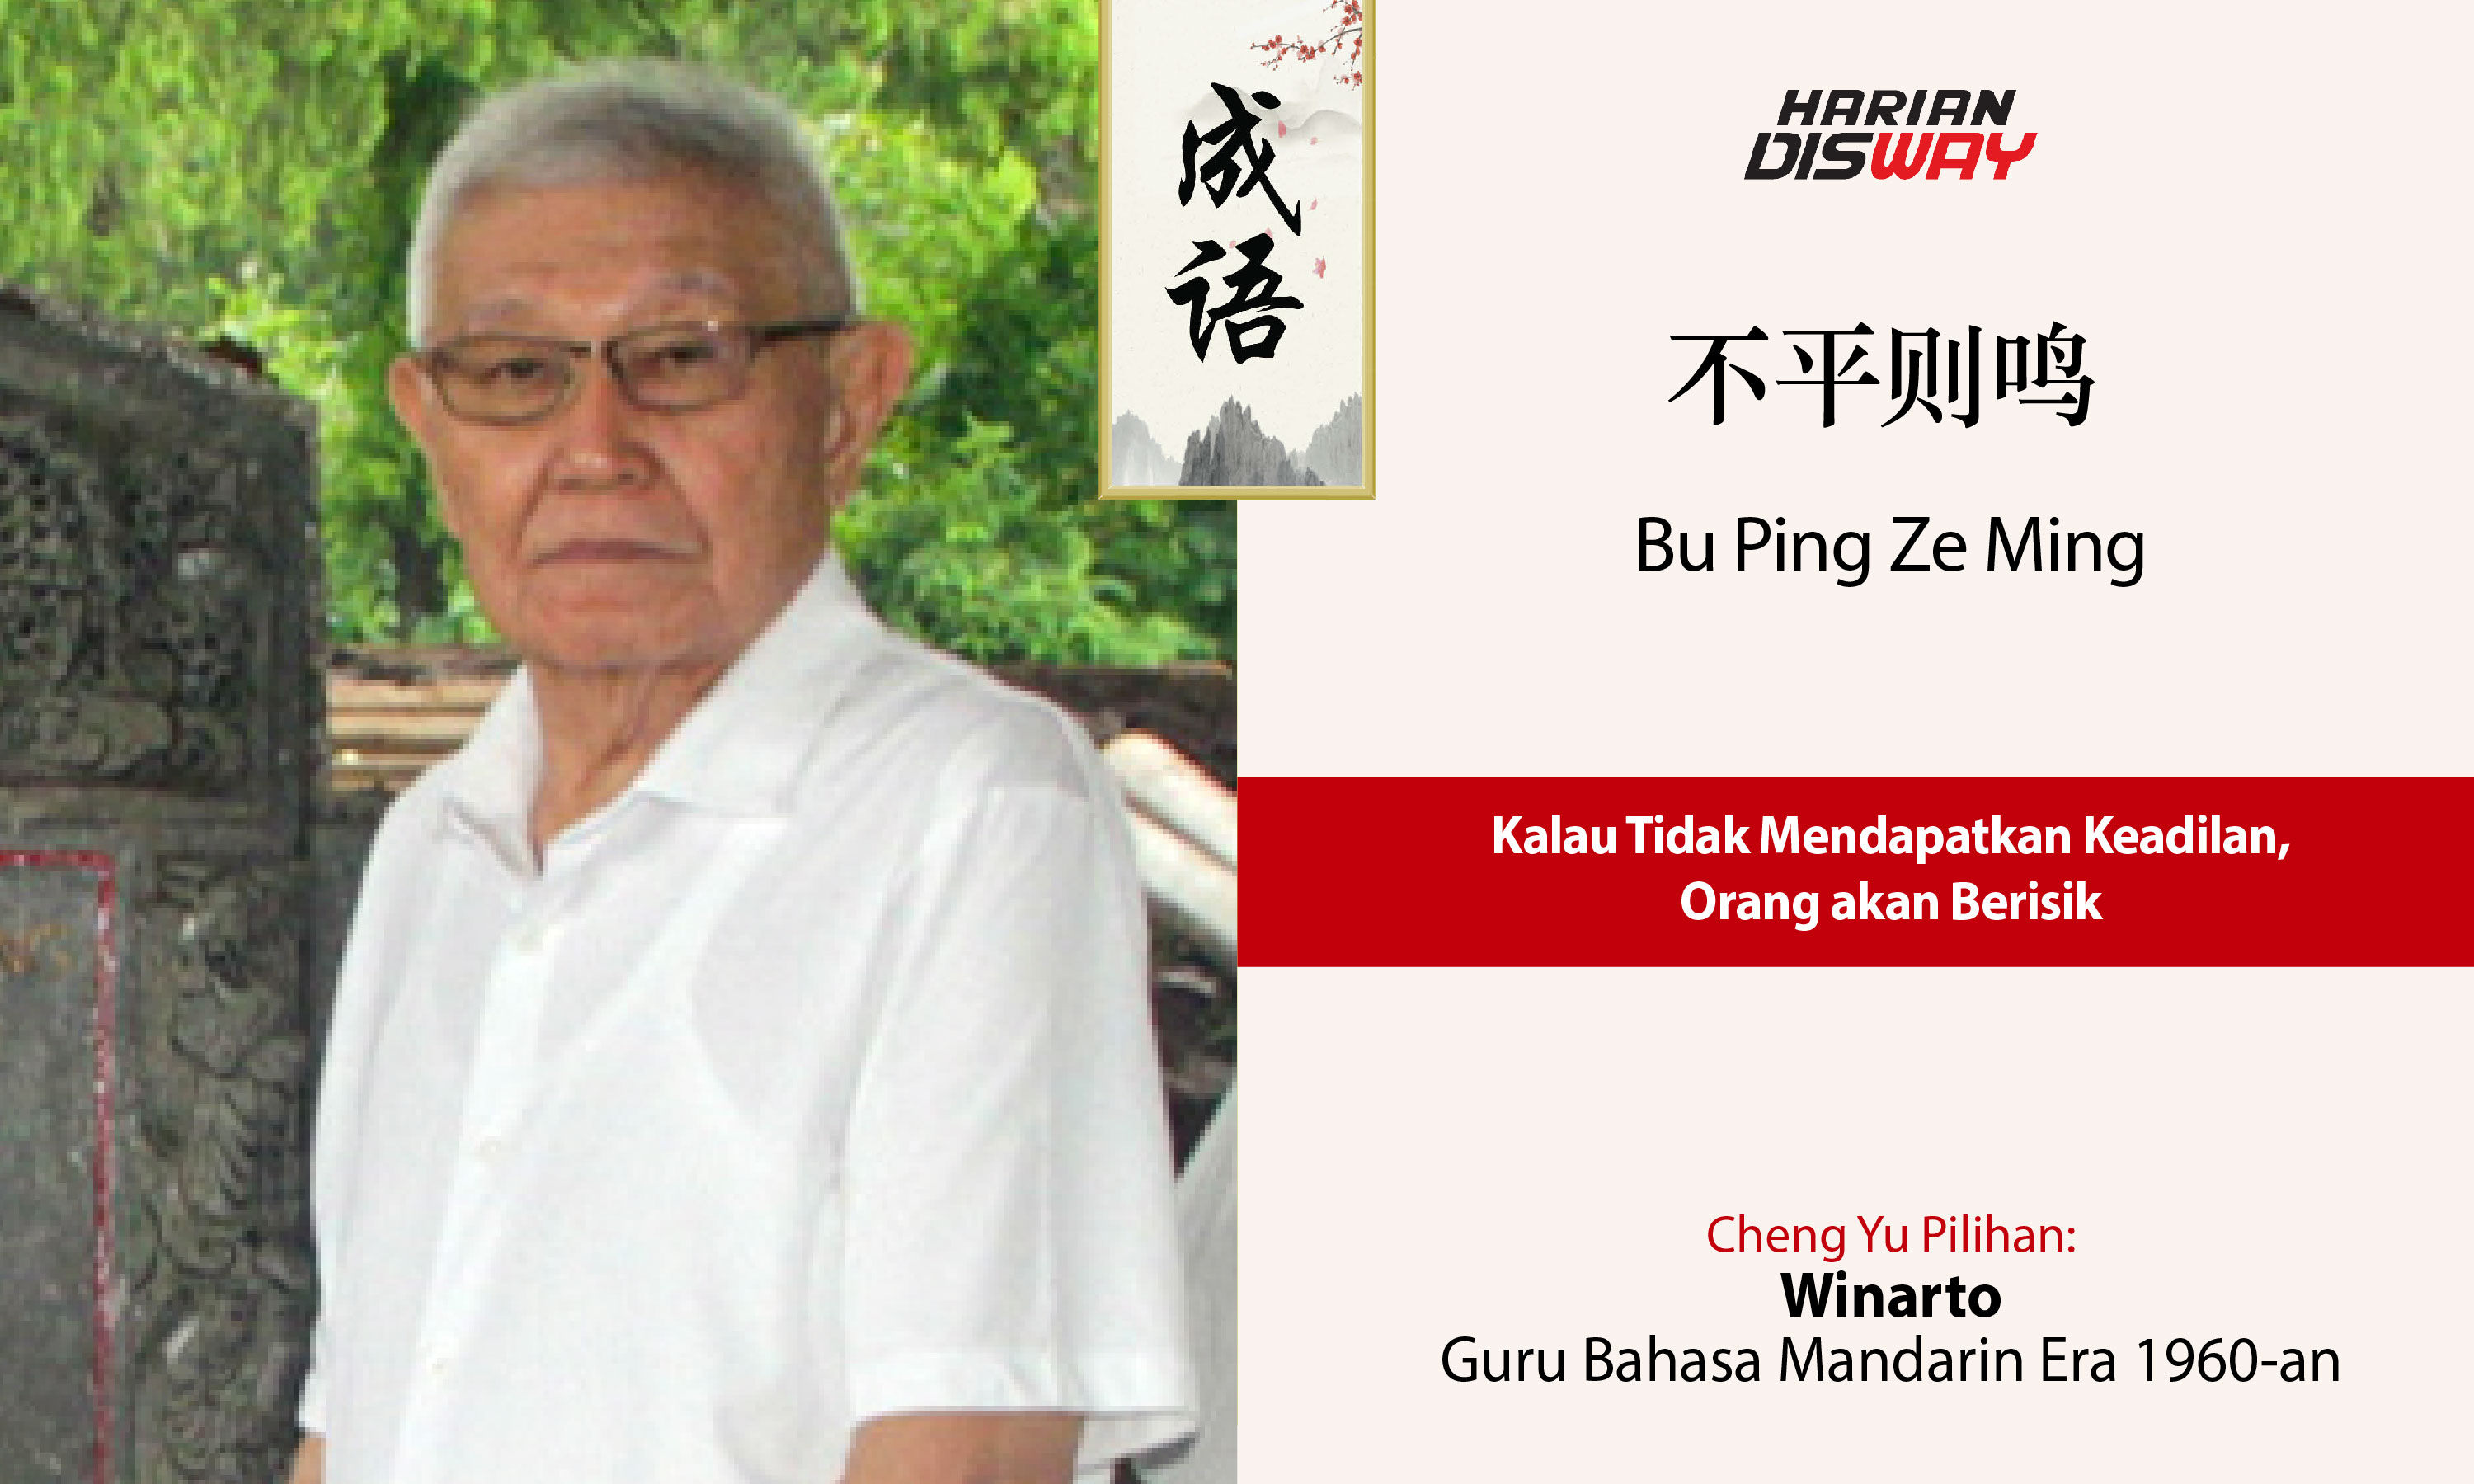 Cheng Yu Pilihan Guru Bahasa Mandarin Senior Winarto: Bu Ping Ze Ming